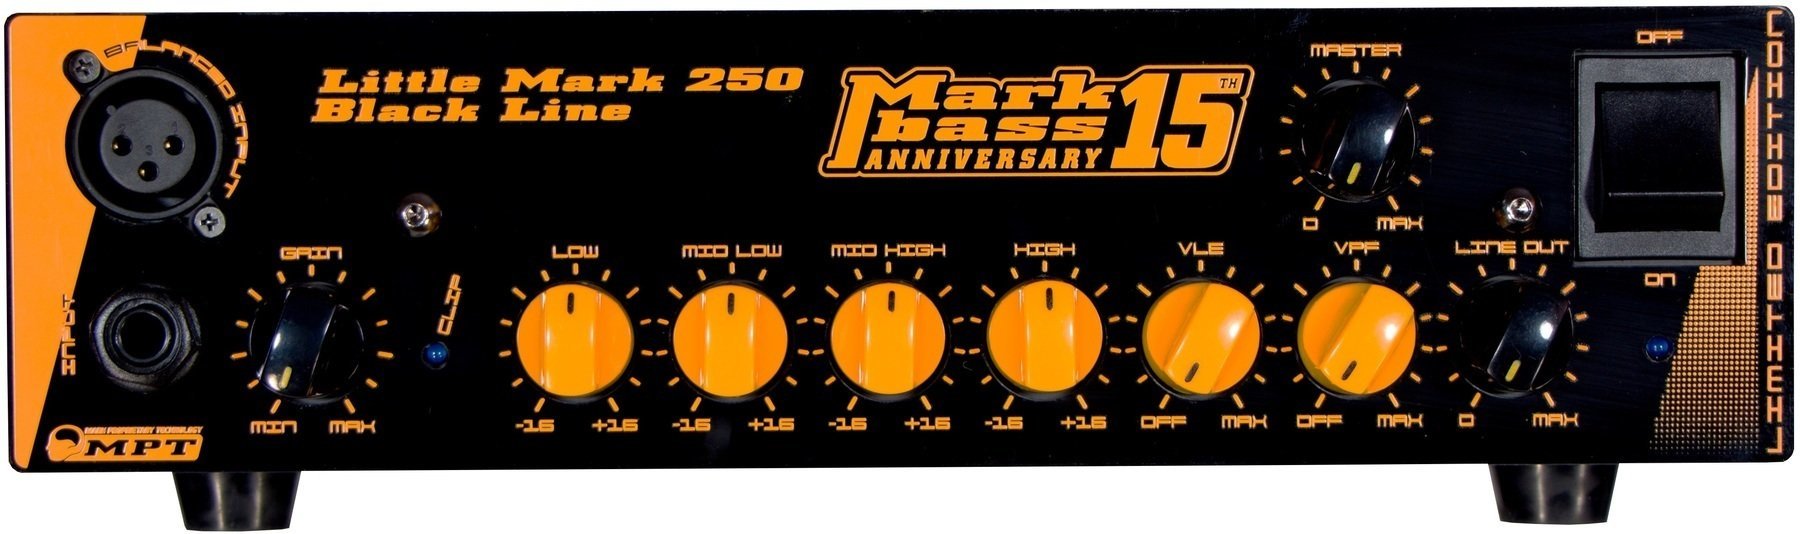 Solid-State Bass Amplifier Markbass Little Mark 250 BK Line Anniversary 15